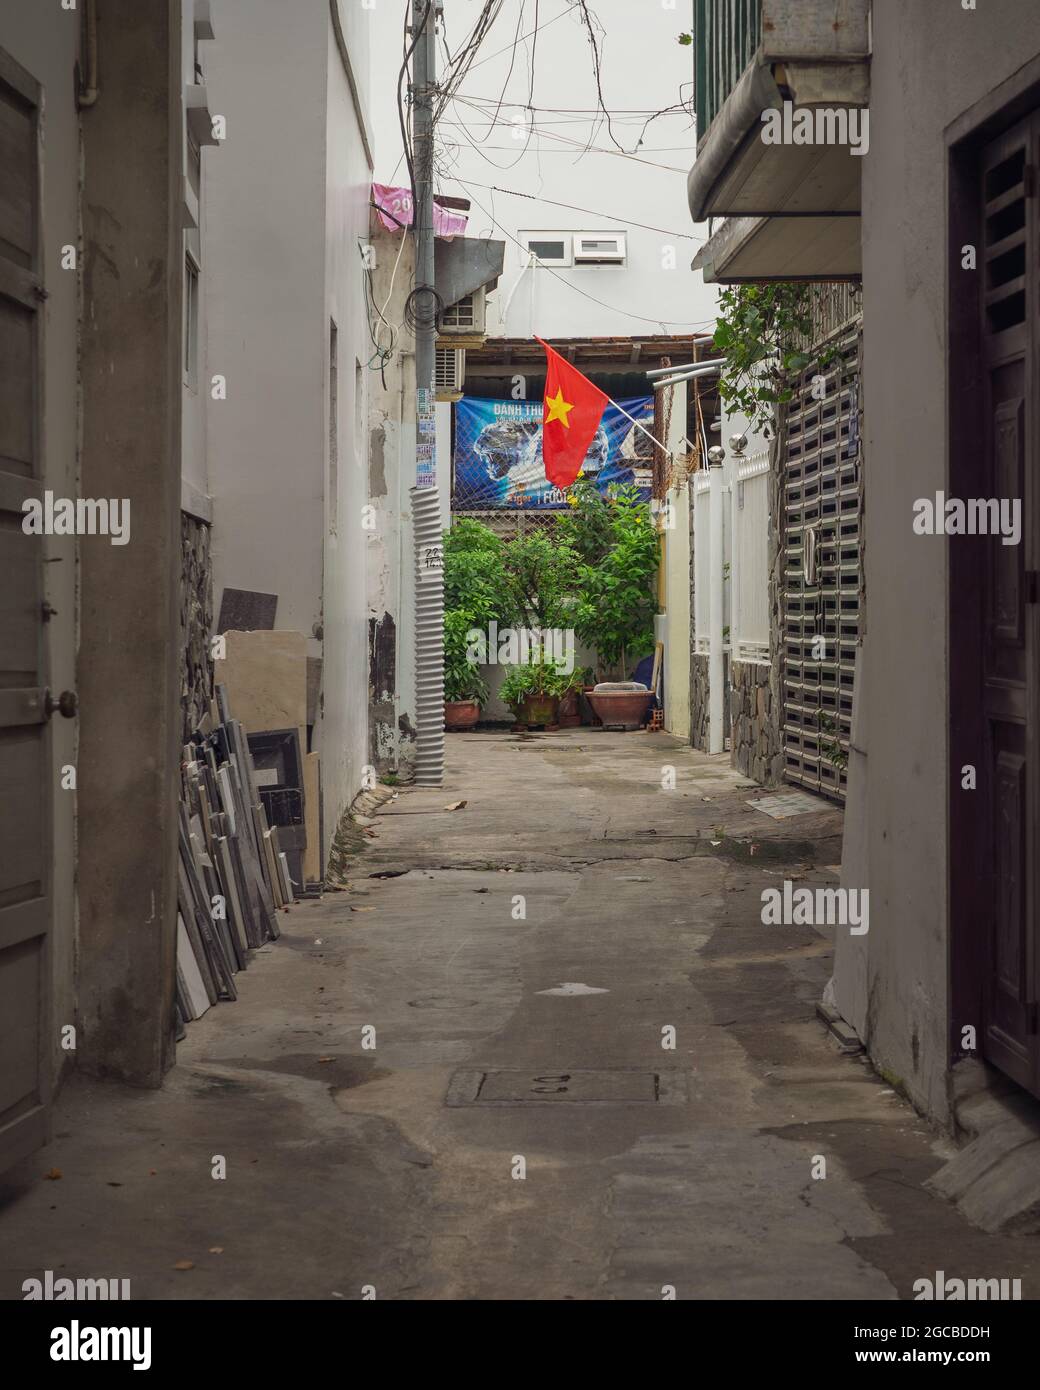 Vietnamesische enge Wohnstraße mit einer Nationalflagge am Ende. Nha Trang, Vietnam: 2020-10-13 Stockfoto